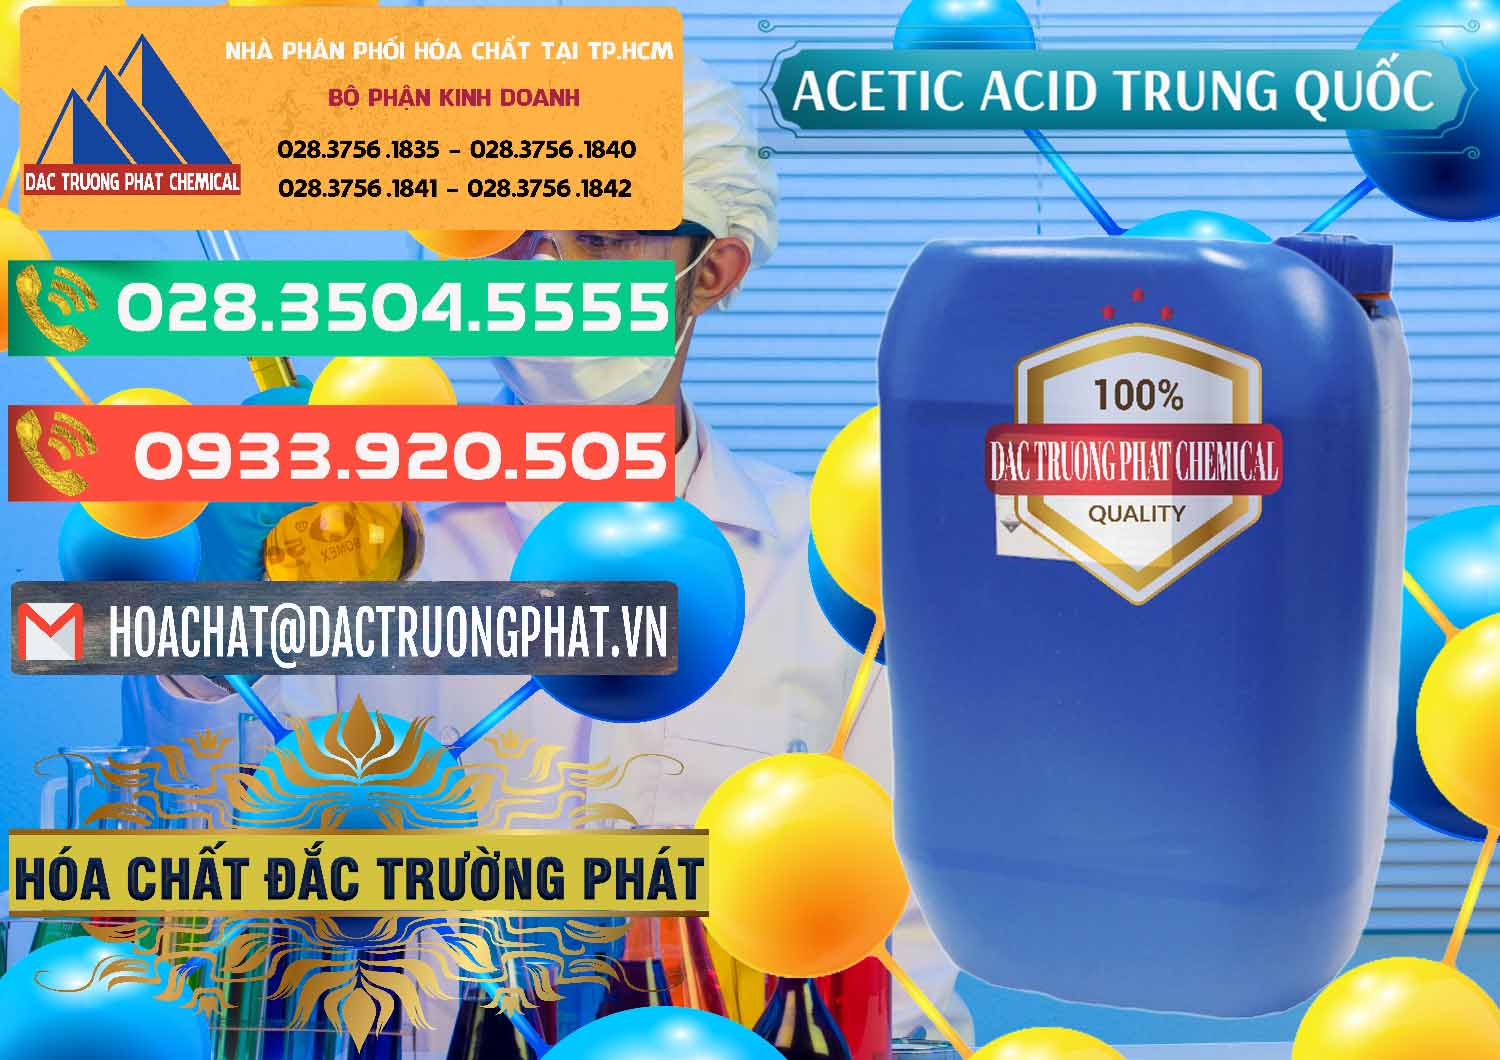 Chuyên cung ứng & bán Acetic Acid – Axit Acetic Trung Quốc China - 0358 - Nơi chuyên phân phối & bán hóa chất tại TP.HCM - congtyhoachat.com.vn